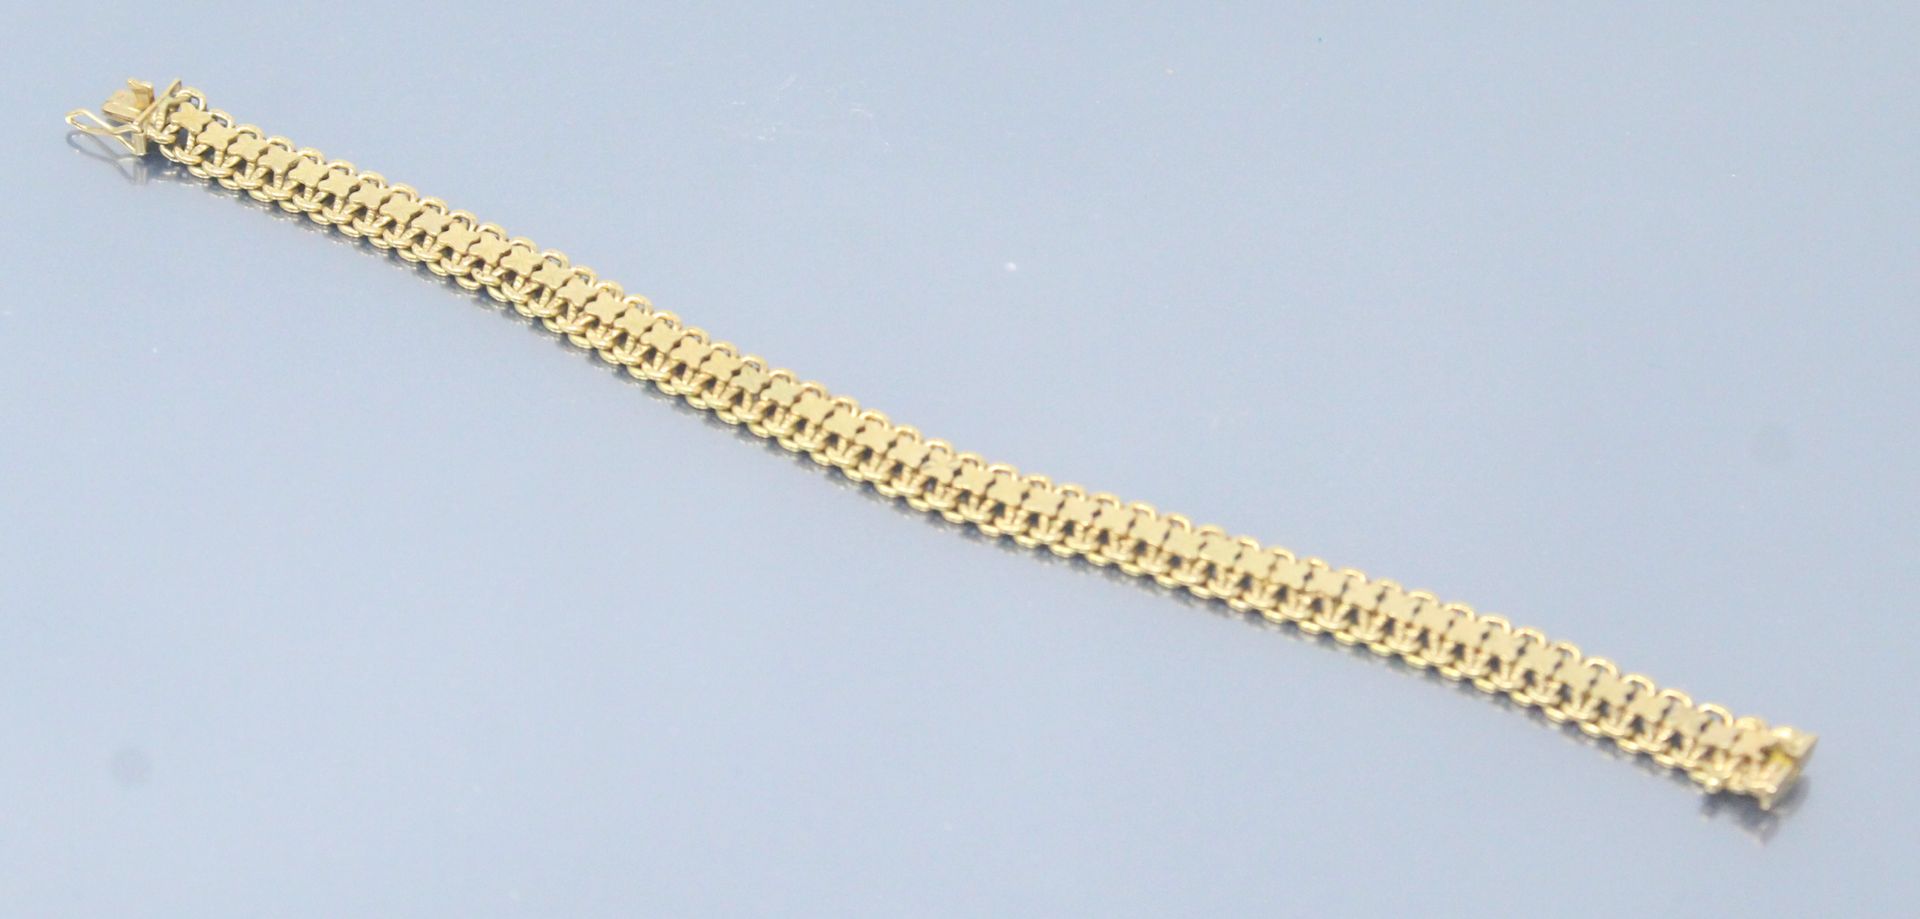 Null Armband aus 18k (750) Gelbgold mit ausgefallenen Maschen.

Adlerkopfpunze. &hellip;